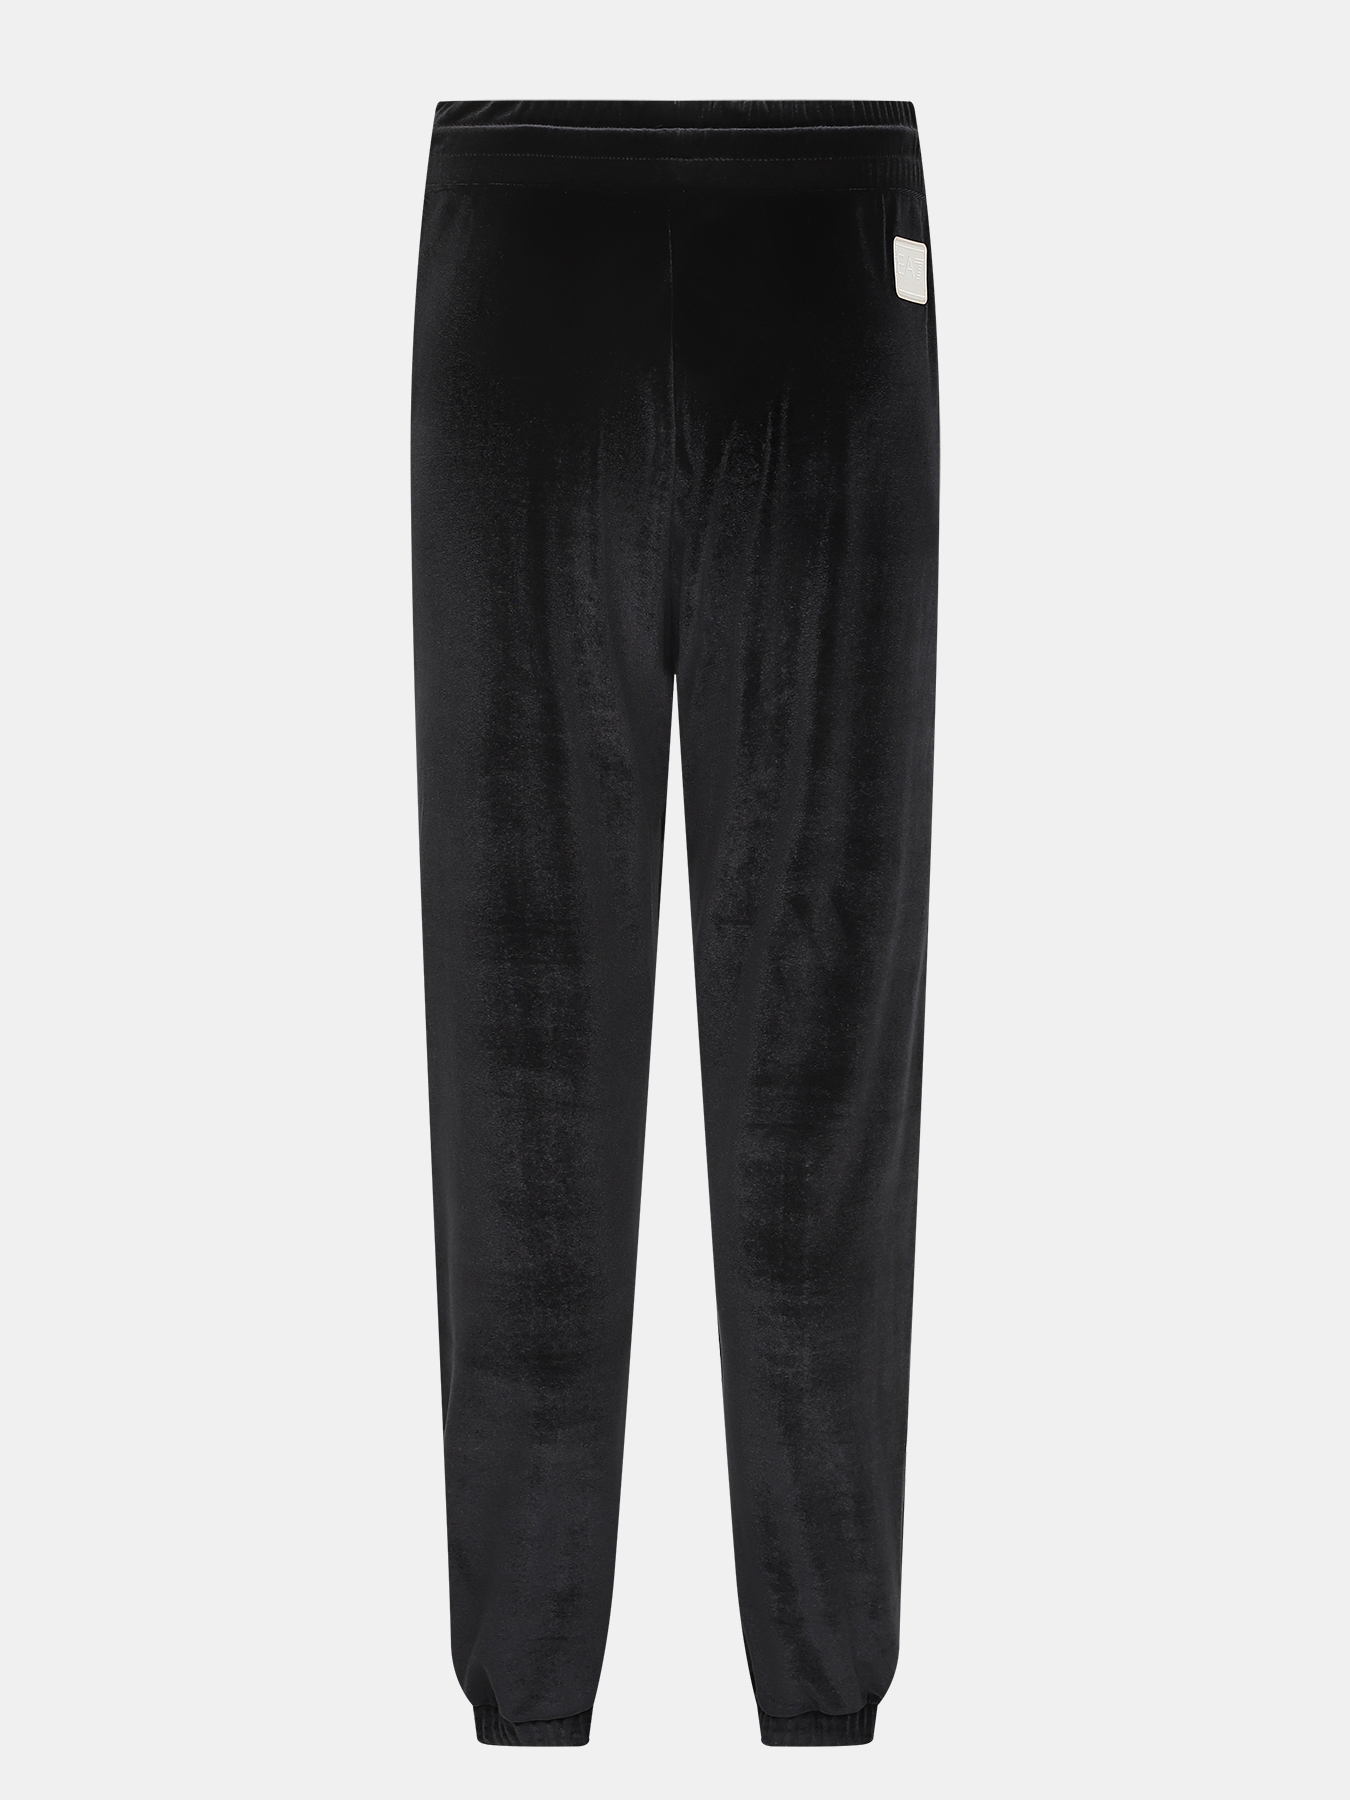 Спортивные брюки EA7 Emporio Armani 423041-043, цвет черный, размер 44-46 - фото 4